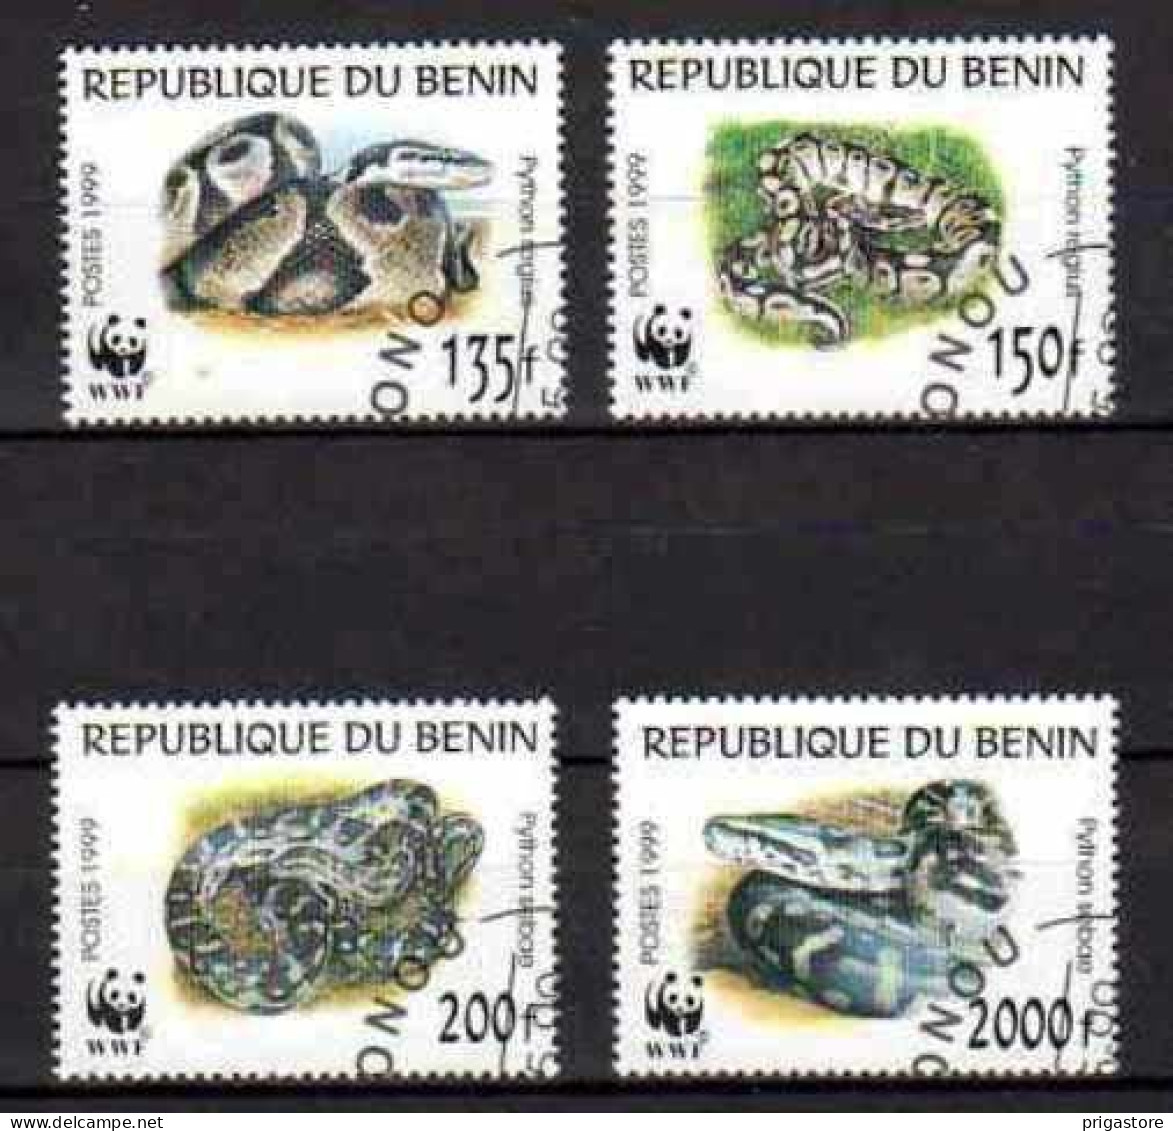 Animaux Serpents Bénin 1999 (40) Yvert N° 898 à 901 Oblitéré Used - Serpents